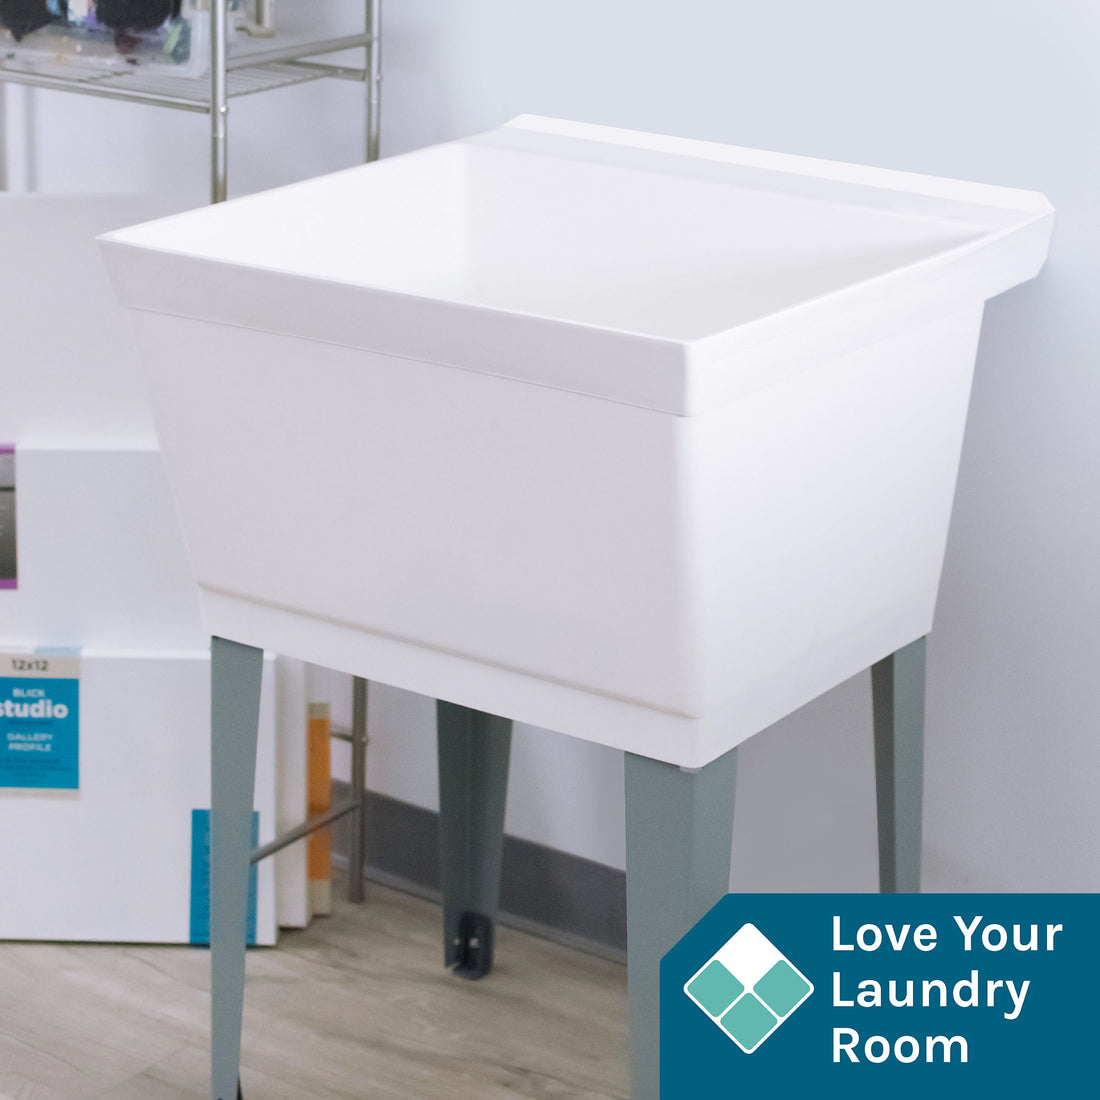 Tehila Standard Freestanding White Utility Sink with Grey Legs, Water Supply Lines Included - Utility sinks vanites Tehila